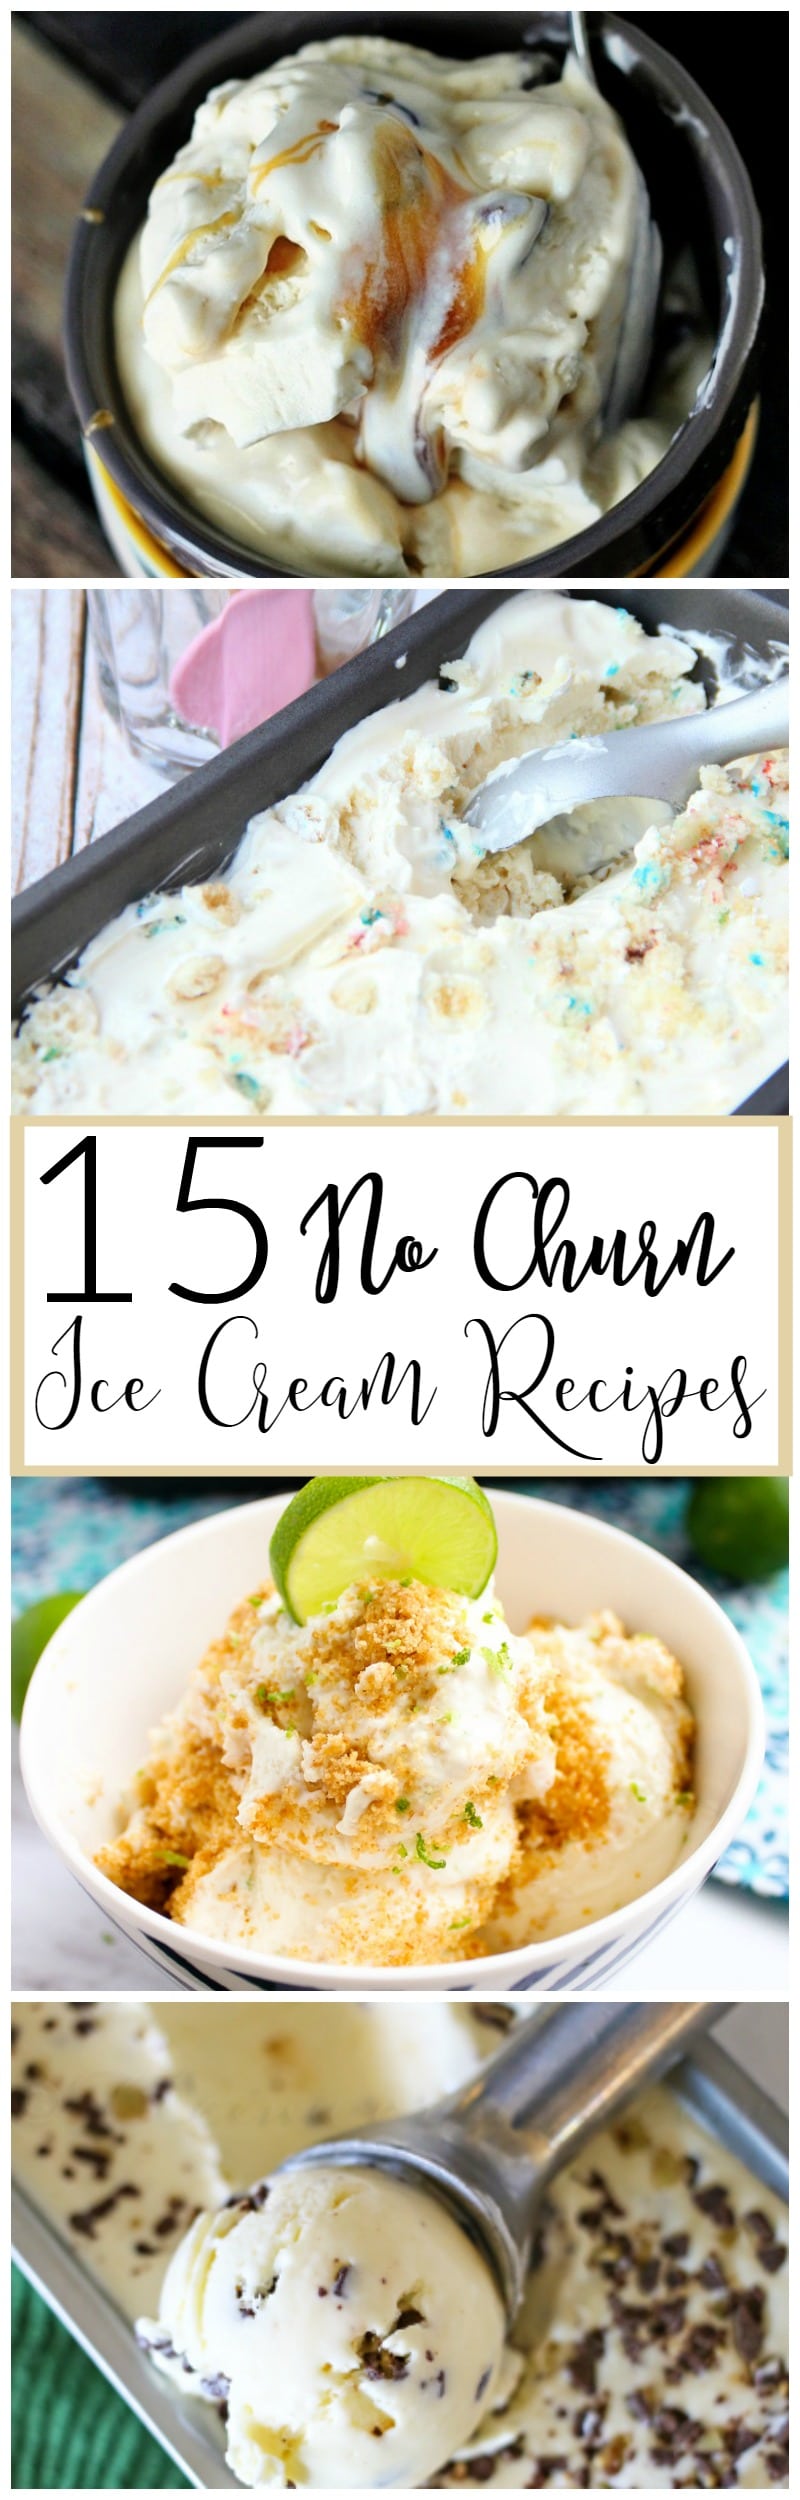 15 No Churn Ice Cream Recipes